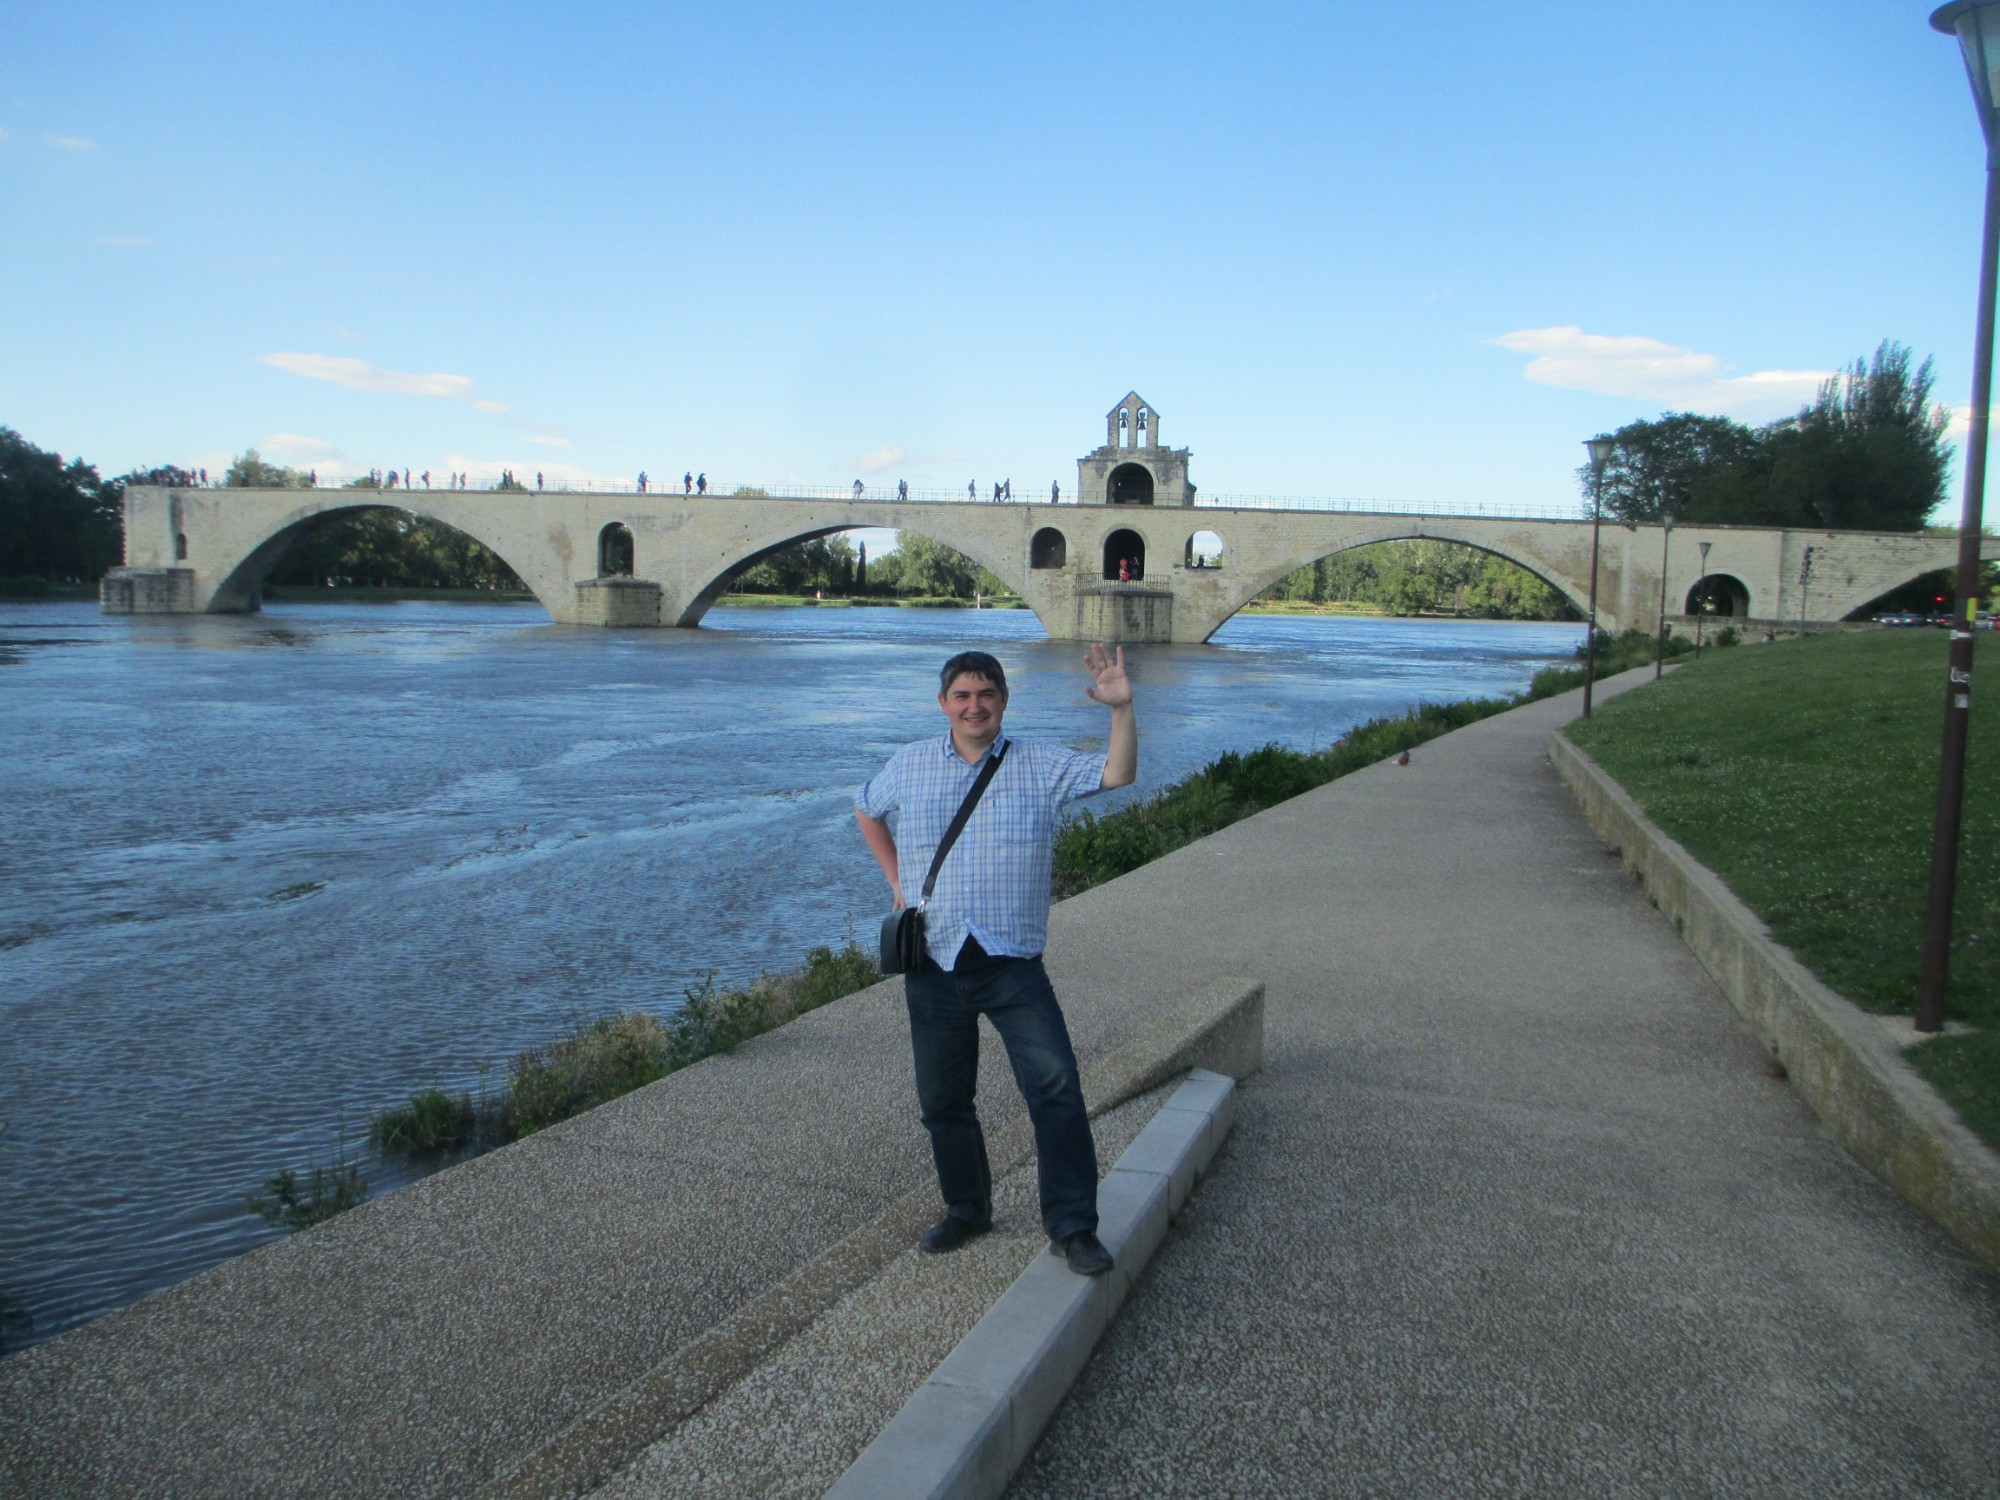 Авиньон. Я на фоне моста Сен-Бенезе. (19.06.2016)